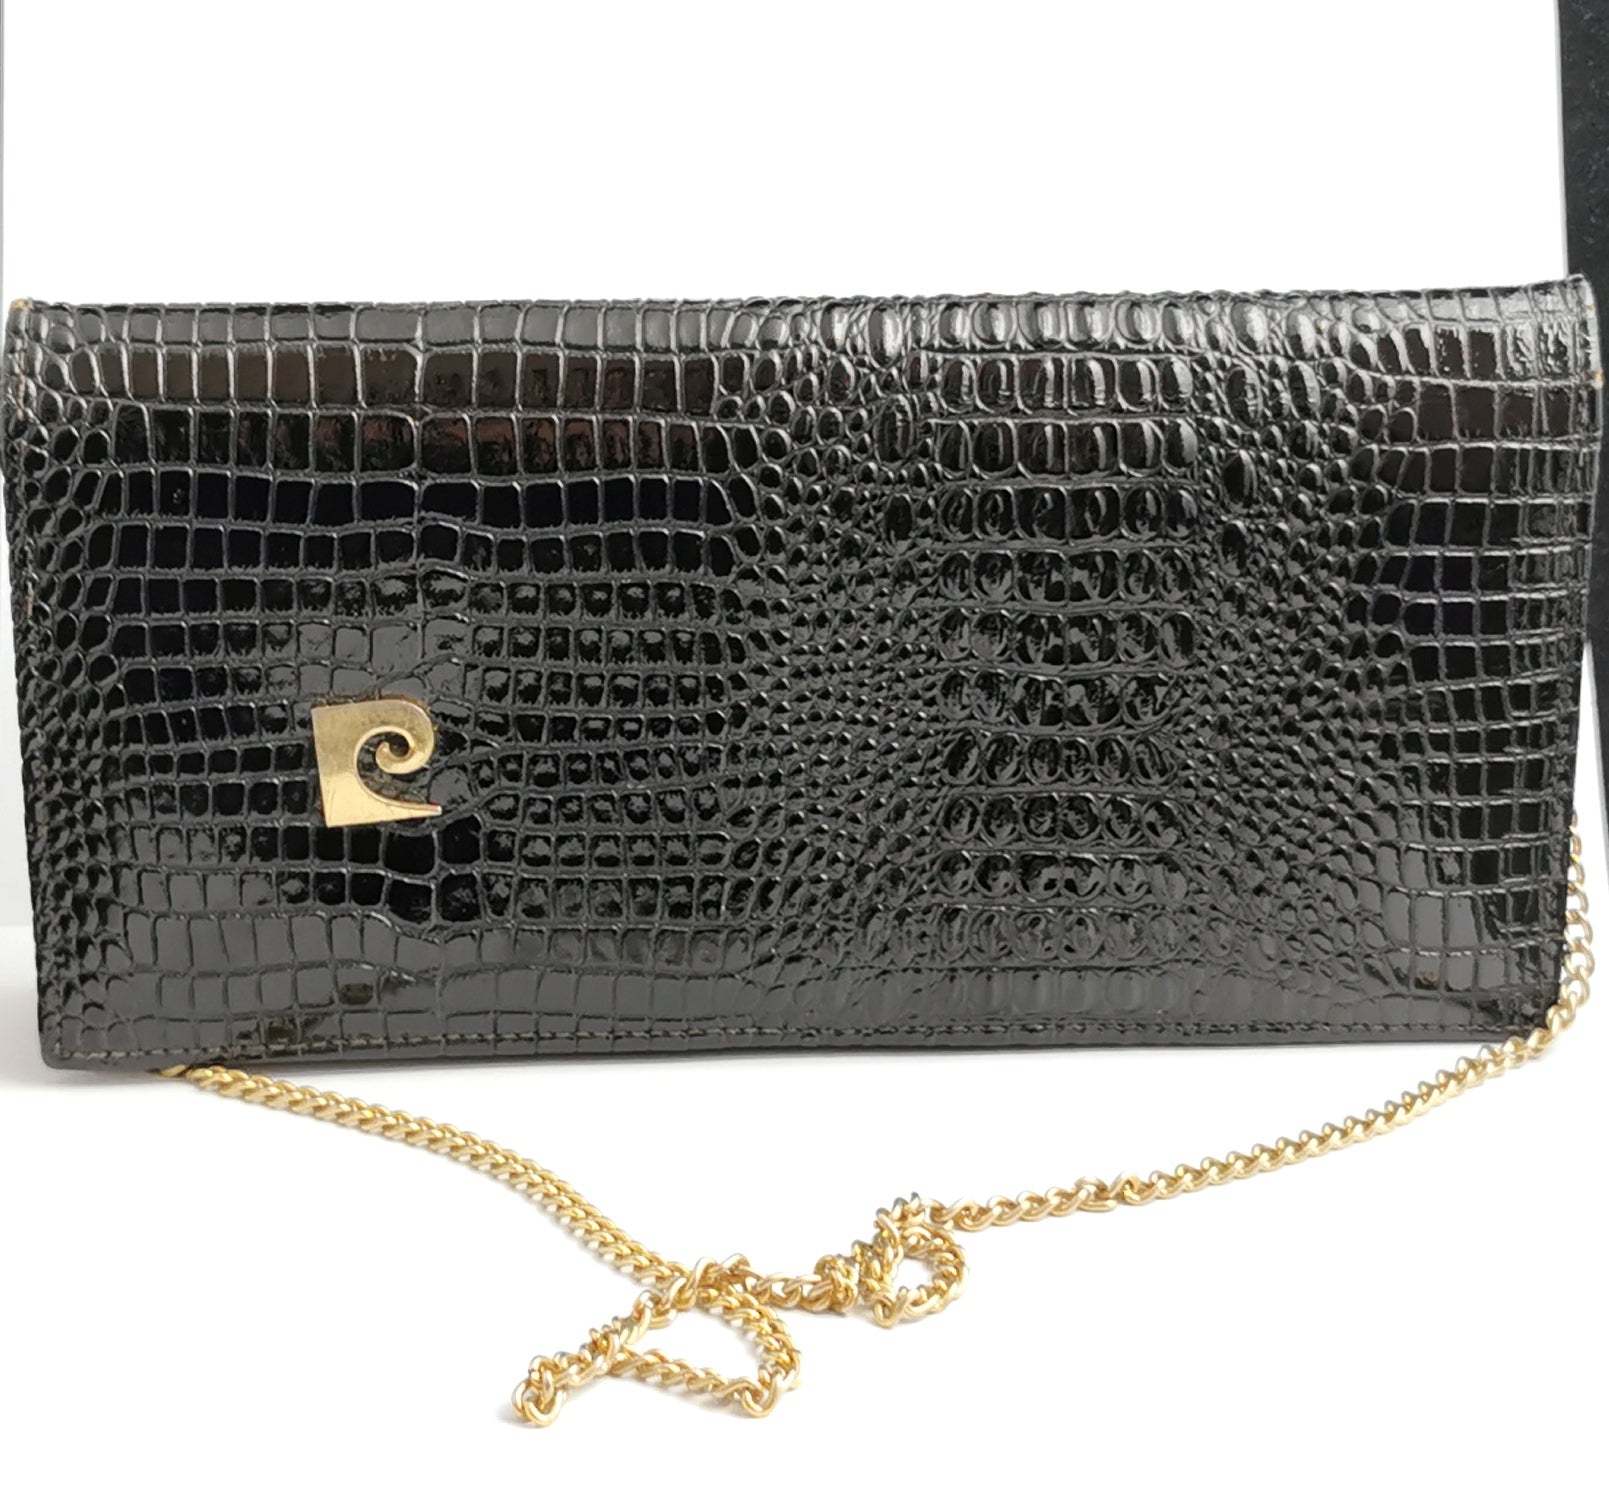 Buy Vintage 70s Pierre Cardin Snakeskin Clutch With Gold Chain, Snake  Shoulder Bag, Brown Leather Handbag Purse, French Designer Evening Bag  Online in India - Etsy